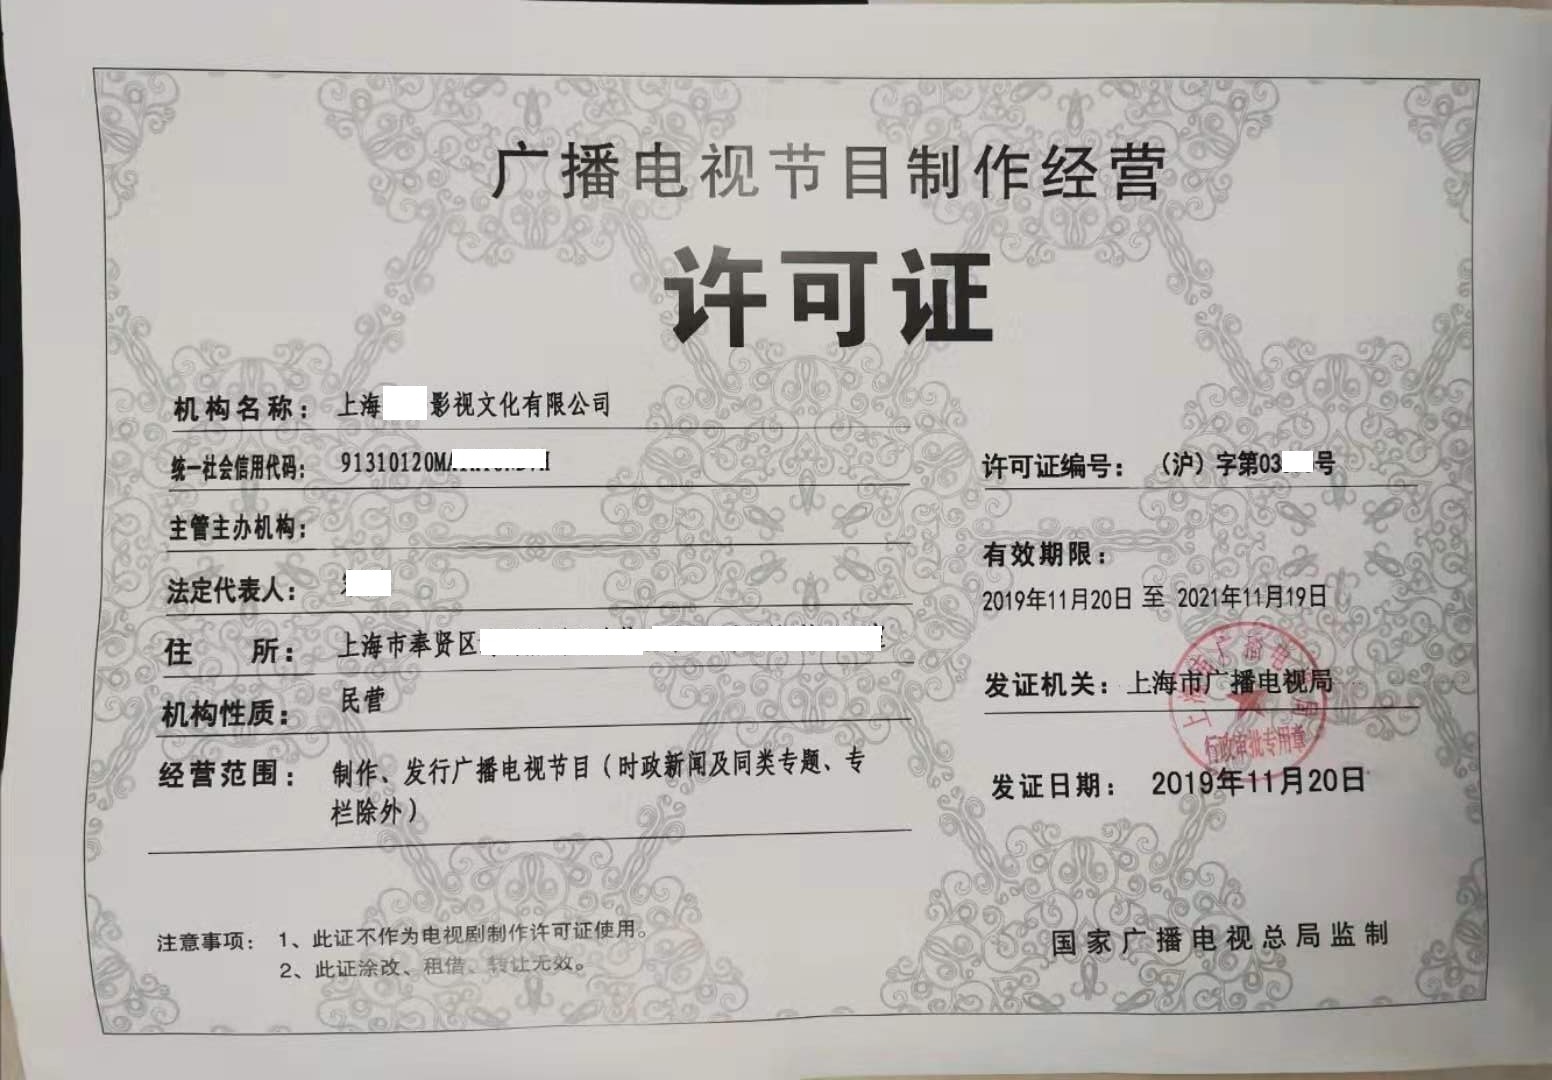 傻瓜,上海广播电视节目制作经营许可对注册资金没要求!